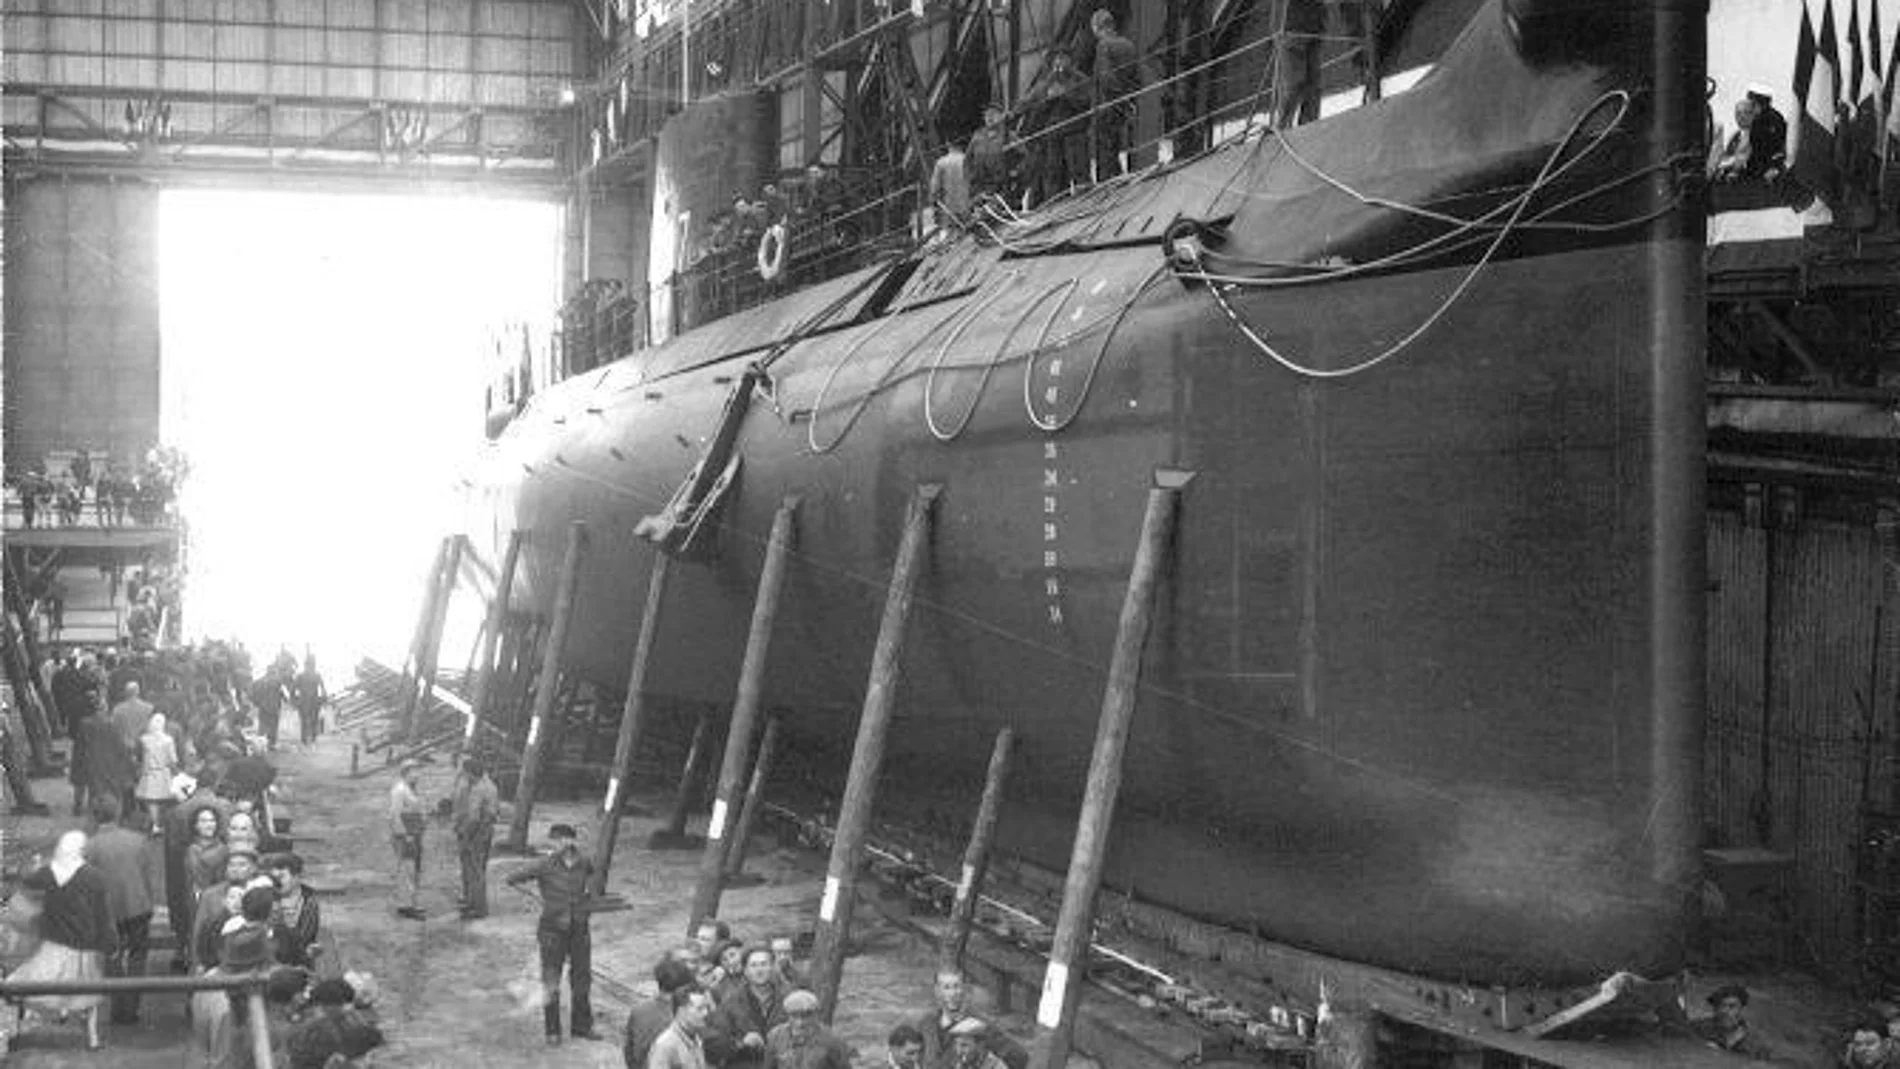 Imagen de la construcción del submarino “Minerve”. (Imagen: Marine Nationale, Ministère de la Defense de France)